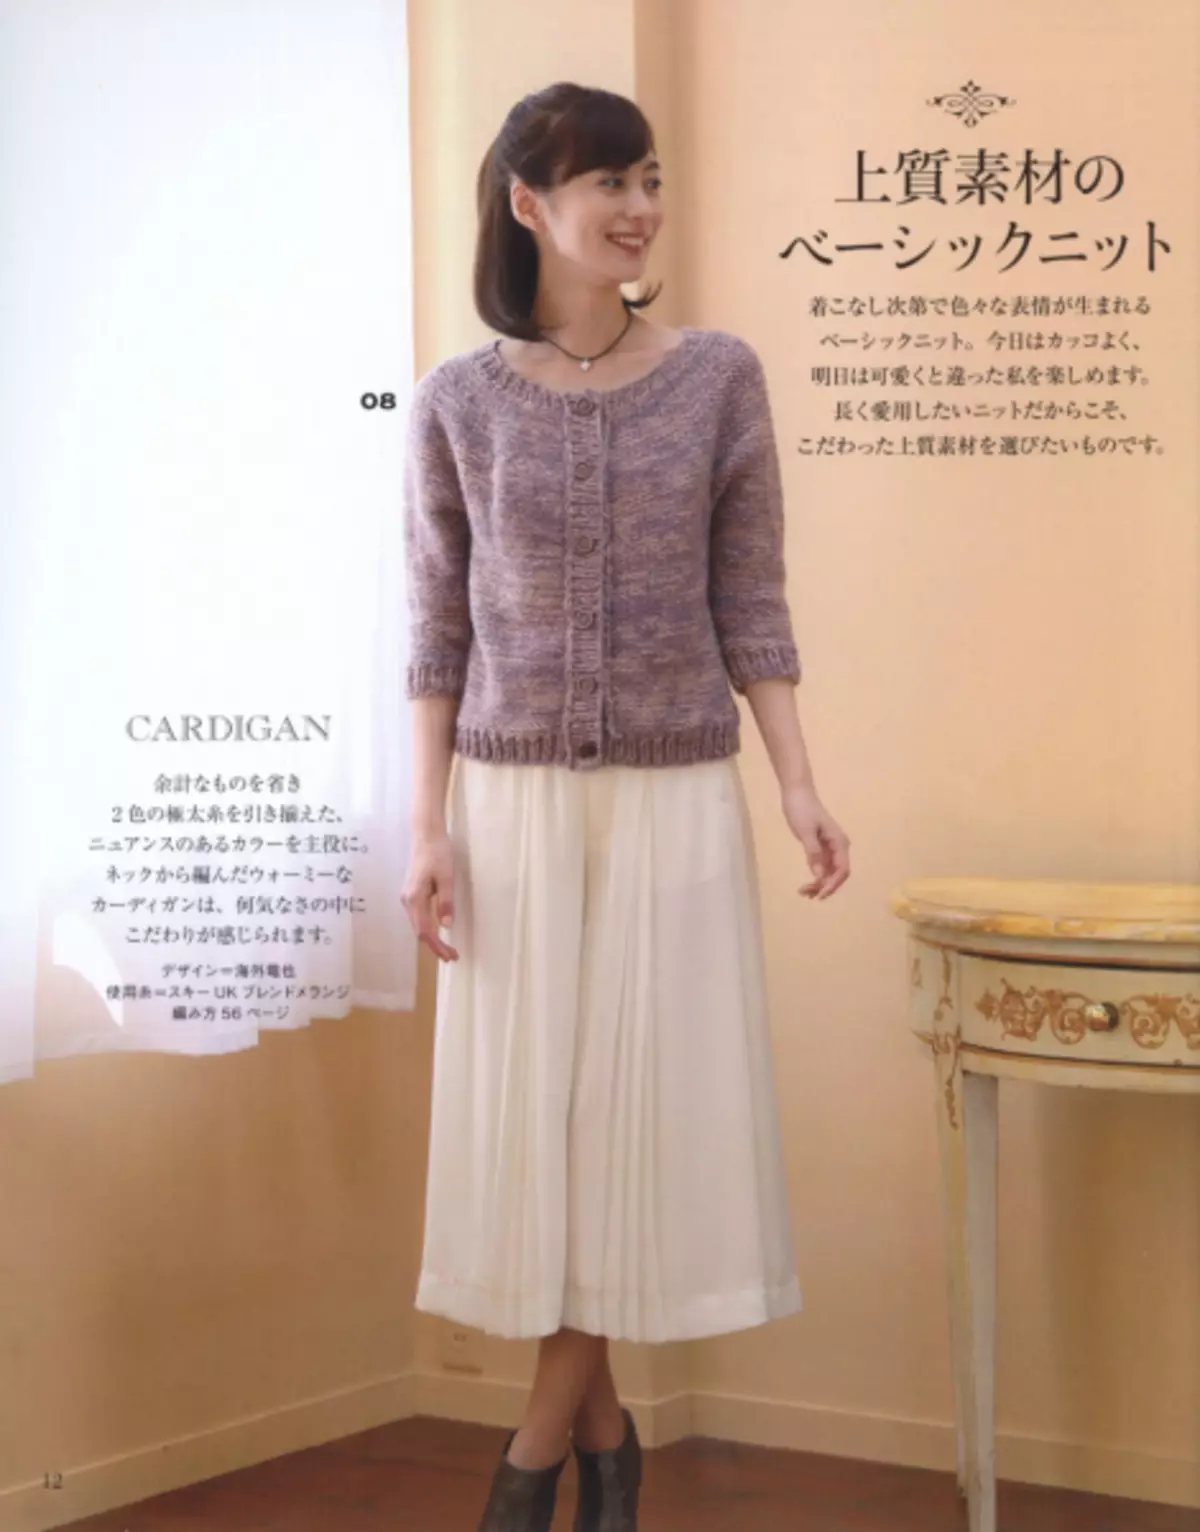 Japanese magazine 